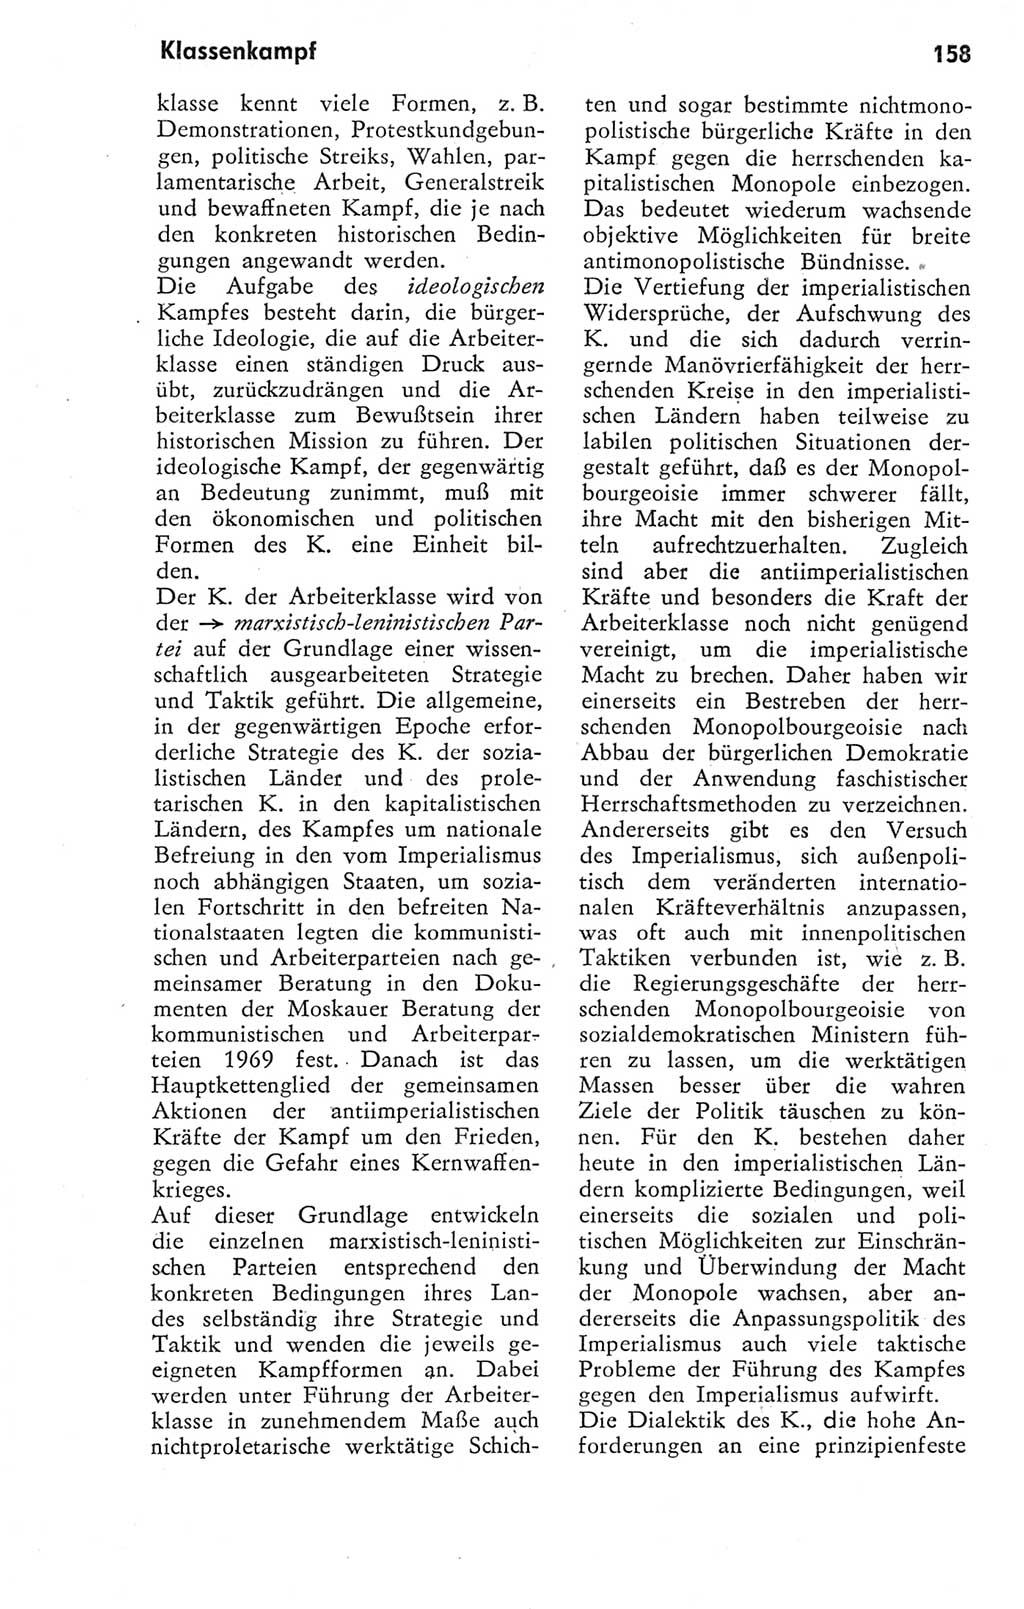 Kleines Wörterbuch der marxistisch-leninistischen Philosophie [Deutsche Demokratische Republik (DDR)] 1974, Seite 158 (Kl. Wb. ML Phil. DDR 1974, S. 158)